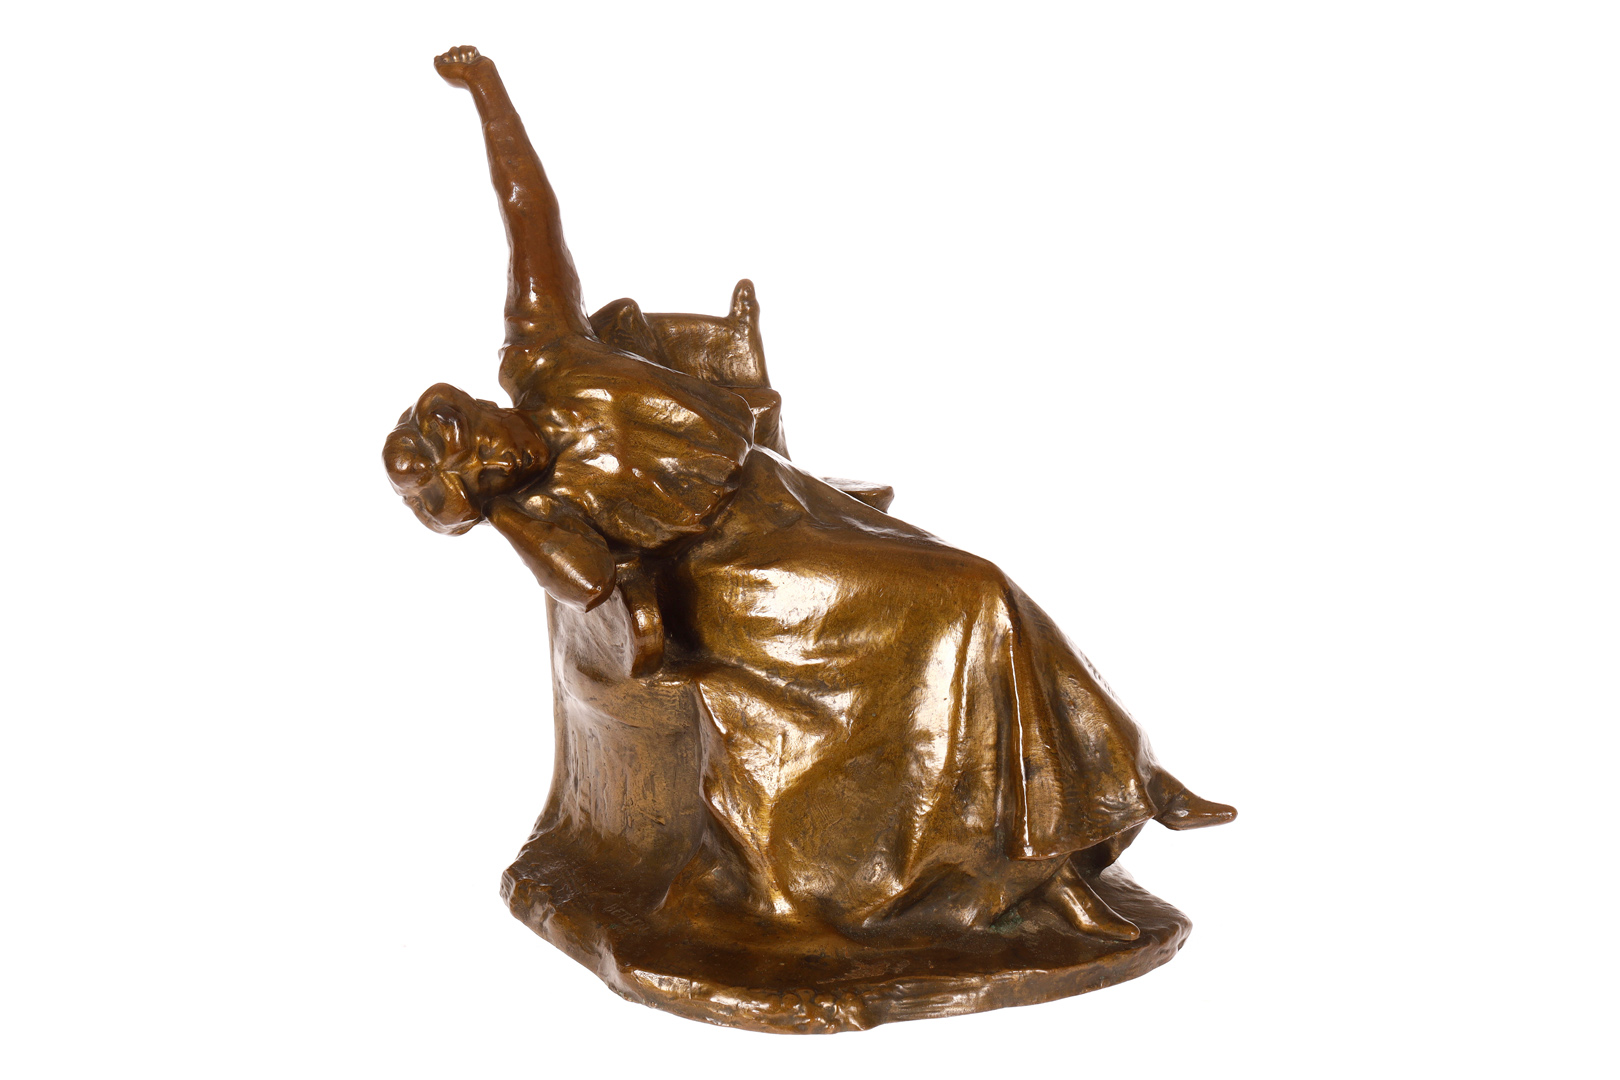 Bronzefigur ”Erwachendes Mädchen”, um 1910, signiert Betlen 906, ungarischer Bildhauer, Verz. im